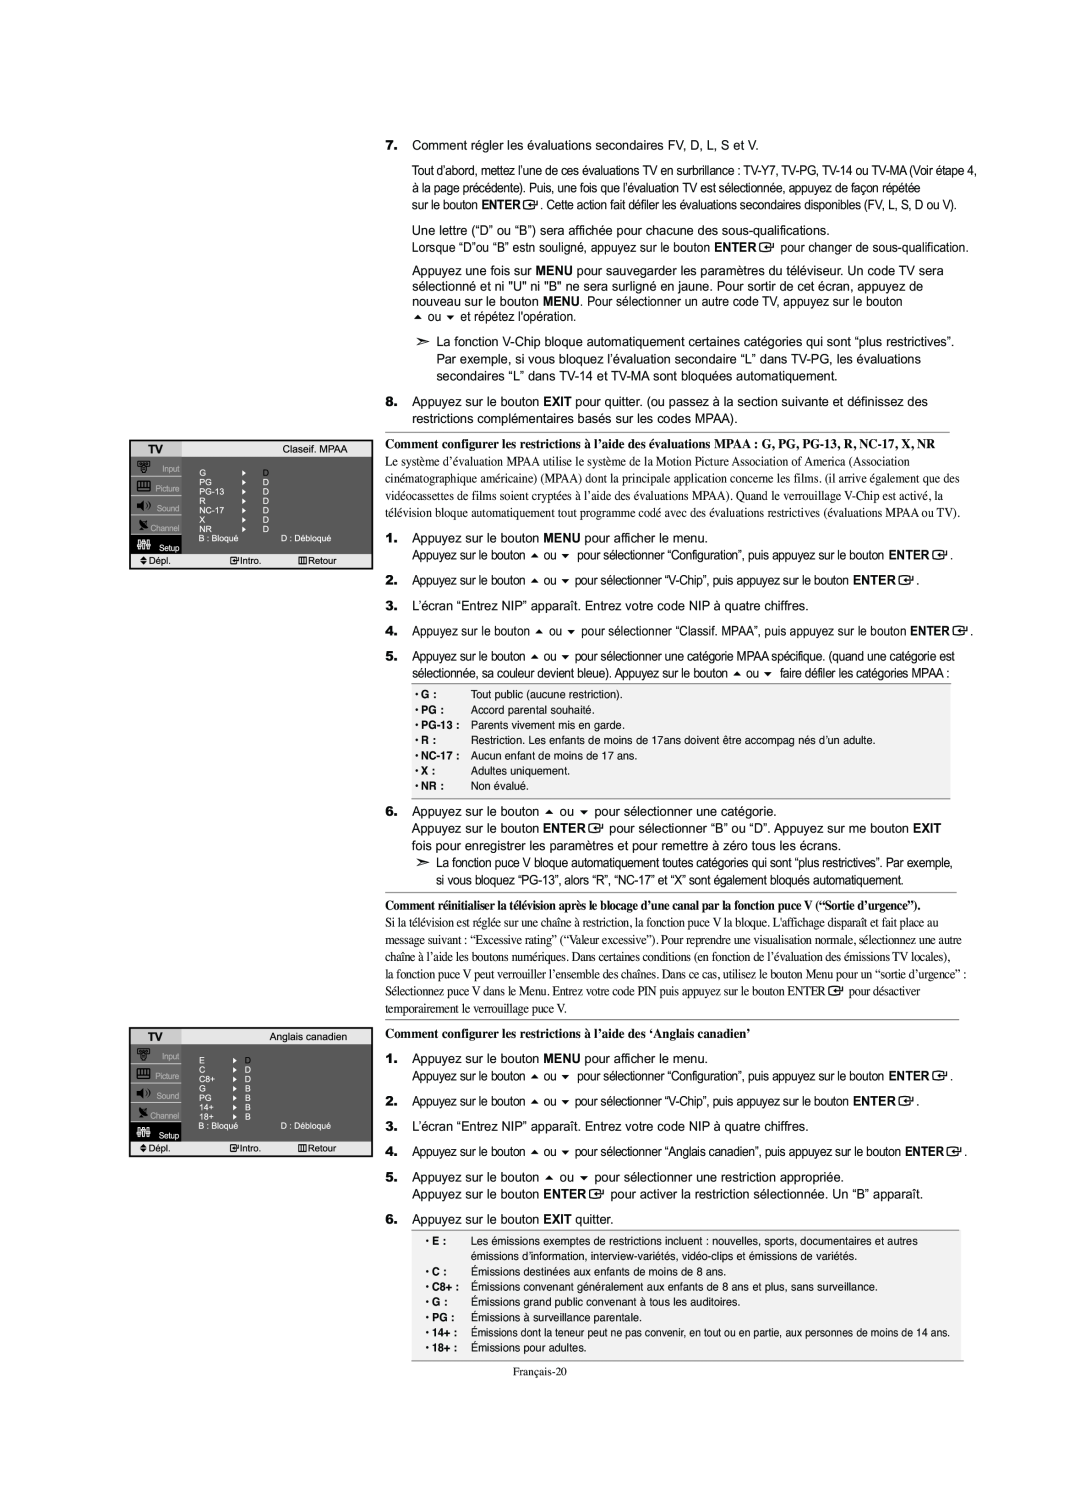 Samsung LN-S2341W manual Comment configurer les restrictions à l’aide des ‘Anglais canadien’ 